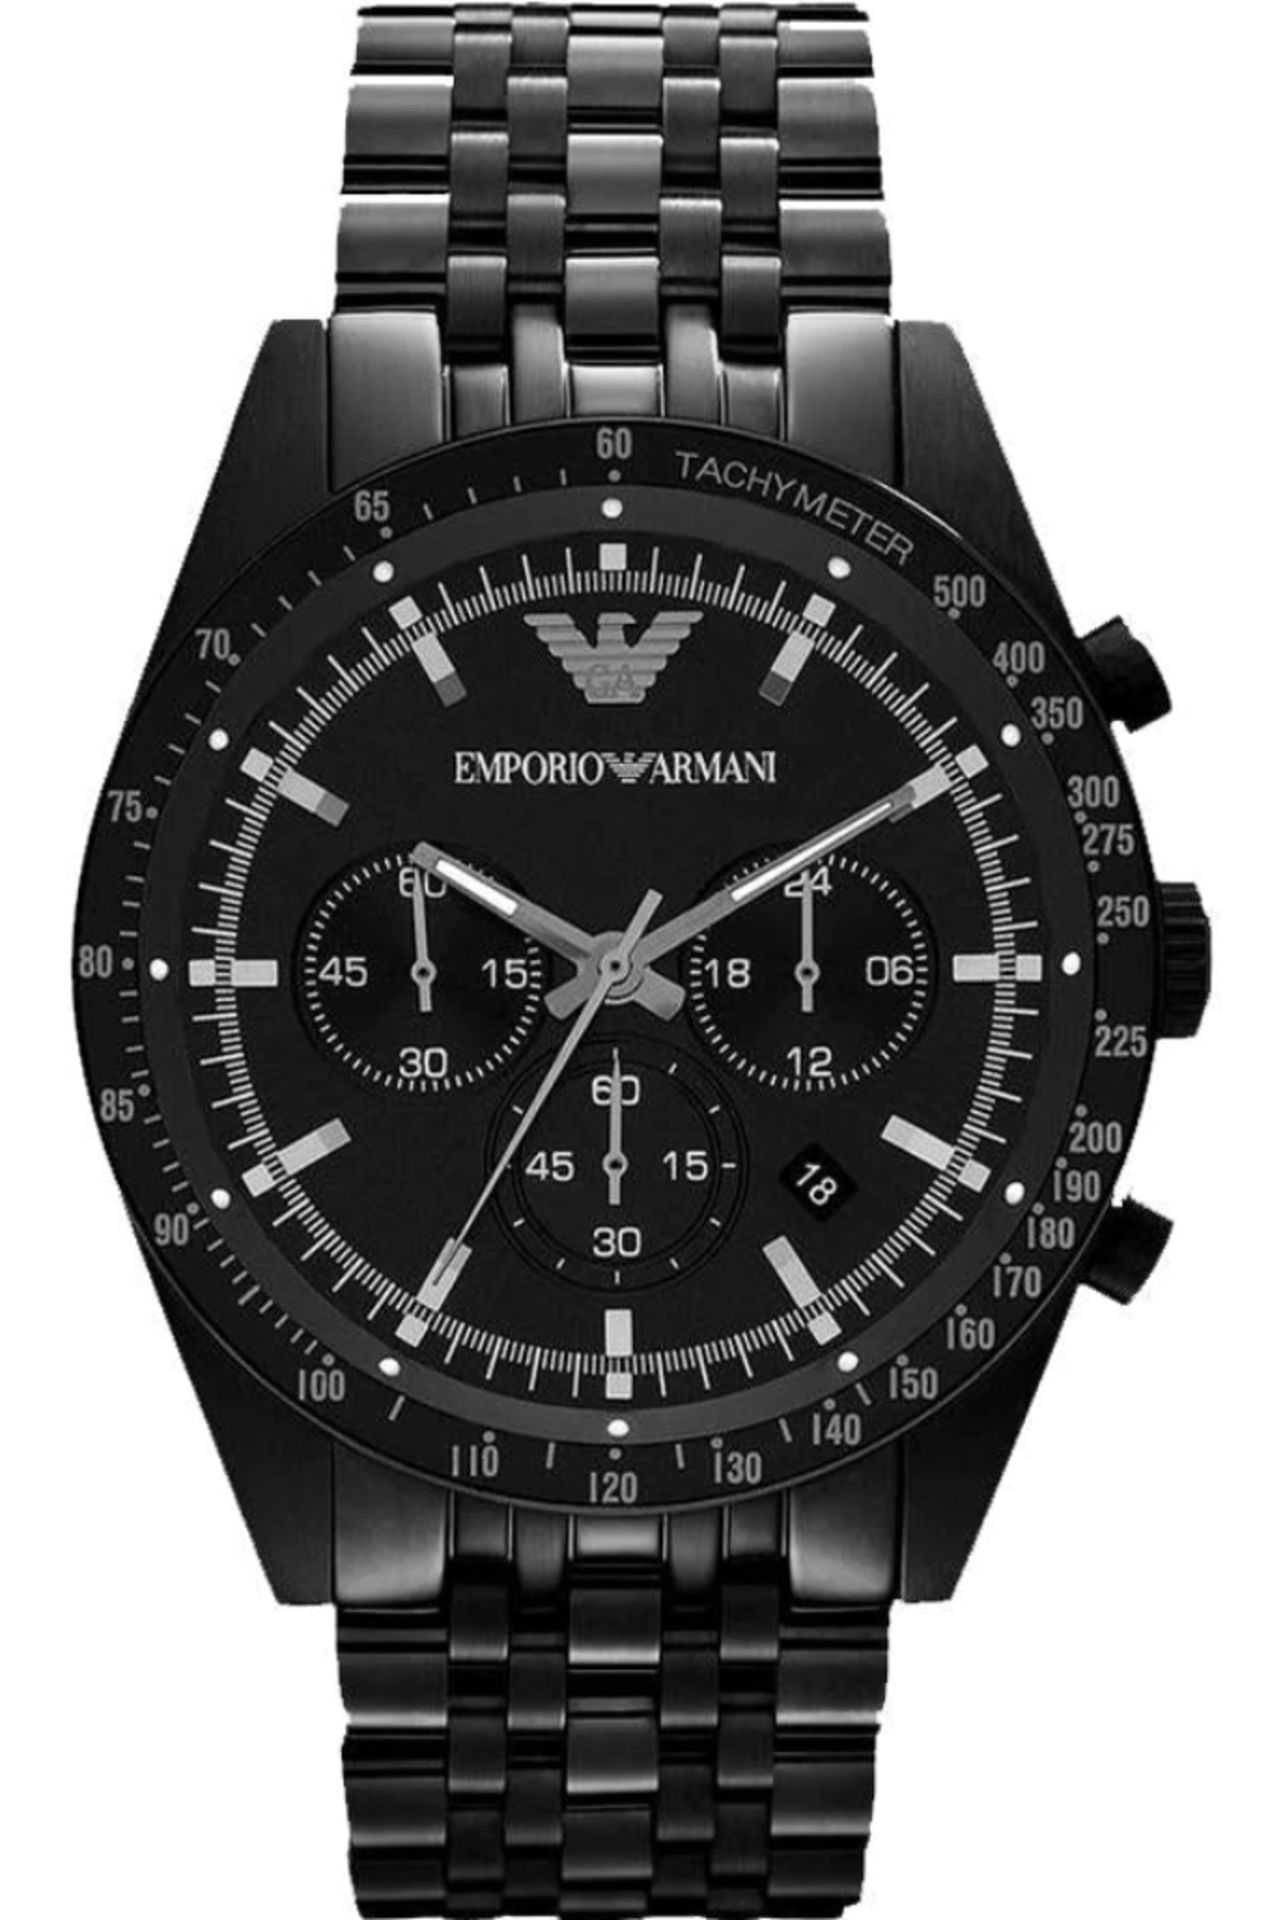 Emporio Armani AR5989 Men's Tazio Black Stainless Steel Bracelet Chronograph Watch